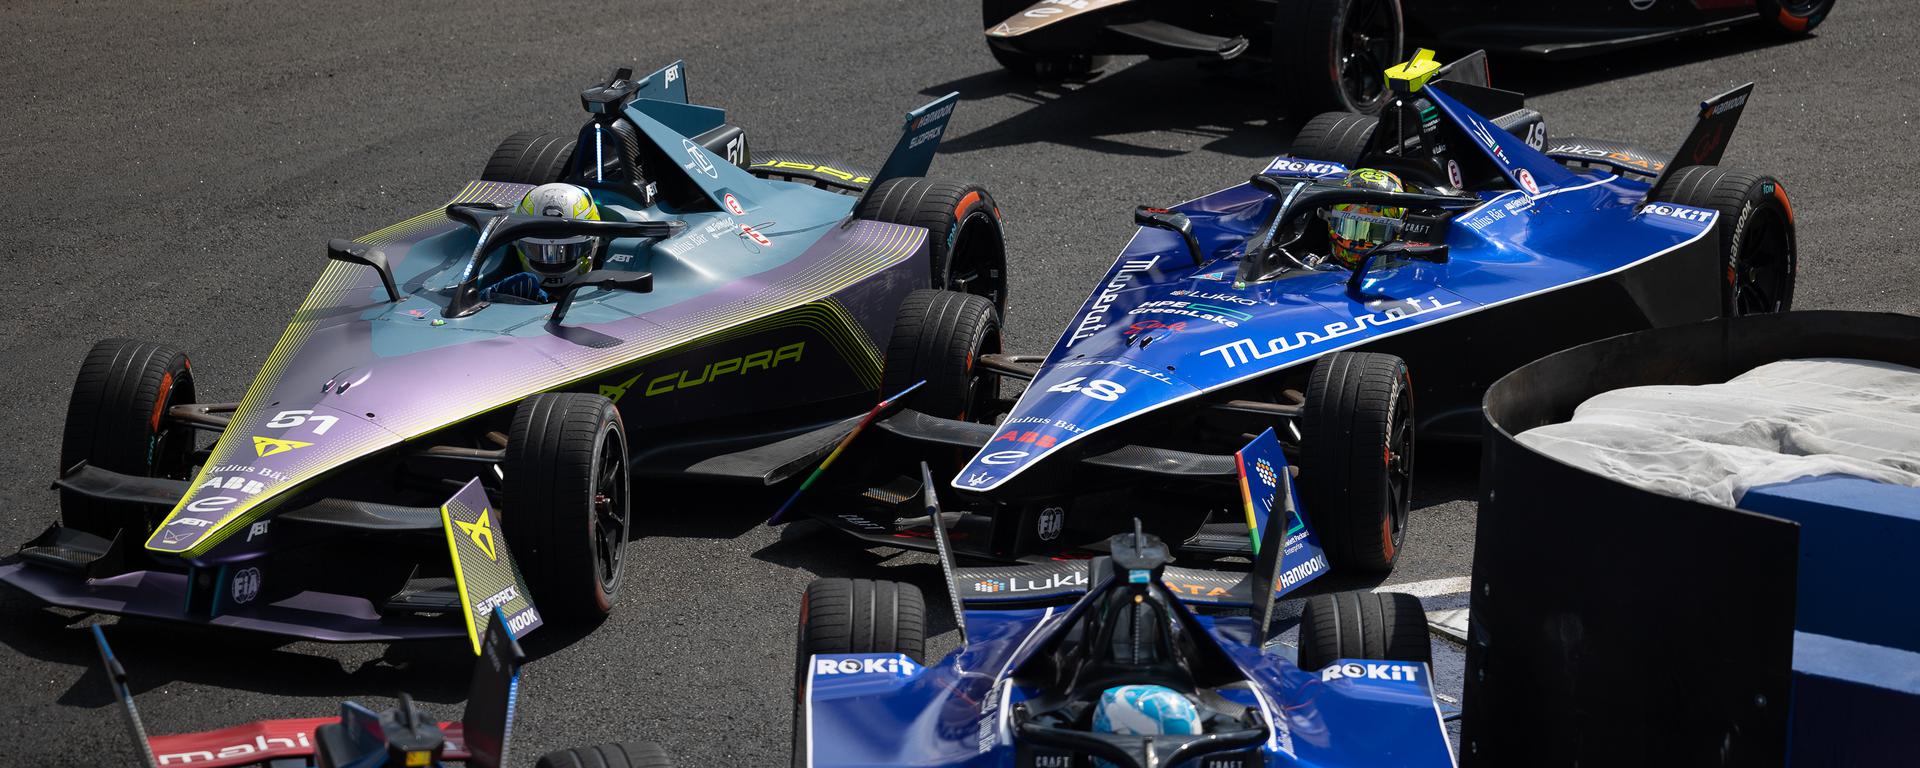 Fórmula E se estrena en Sao Paulo: Mitch Evans del equipo Jaguar se lleva el e-Prix de Brasil tras una intensa carrera marcada por un impresionante accidente de Nissan